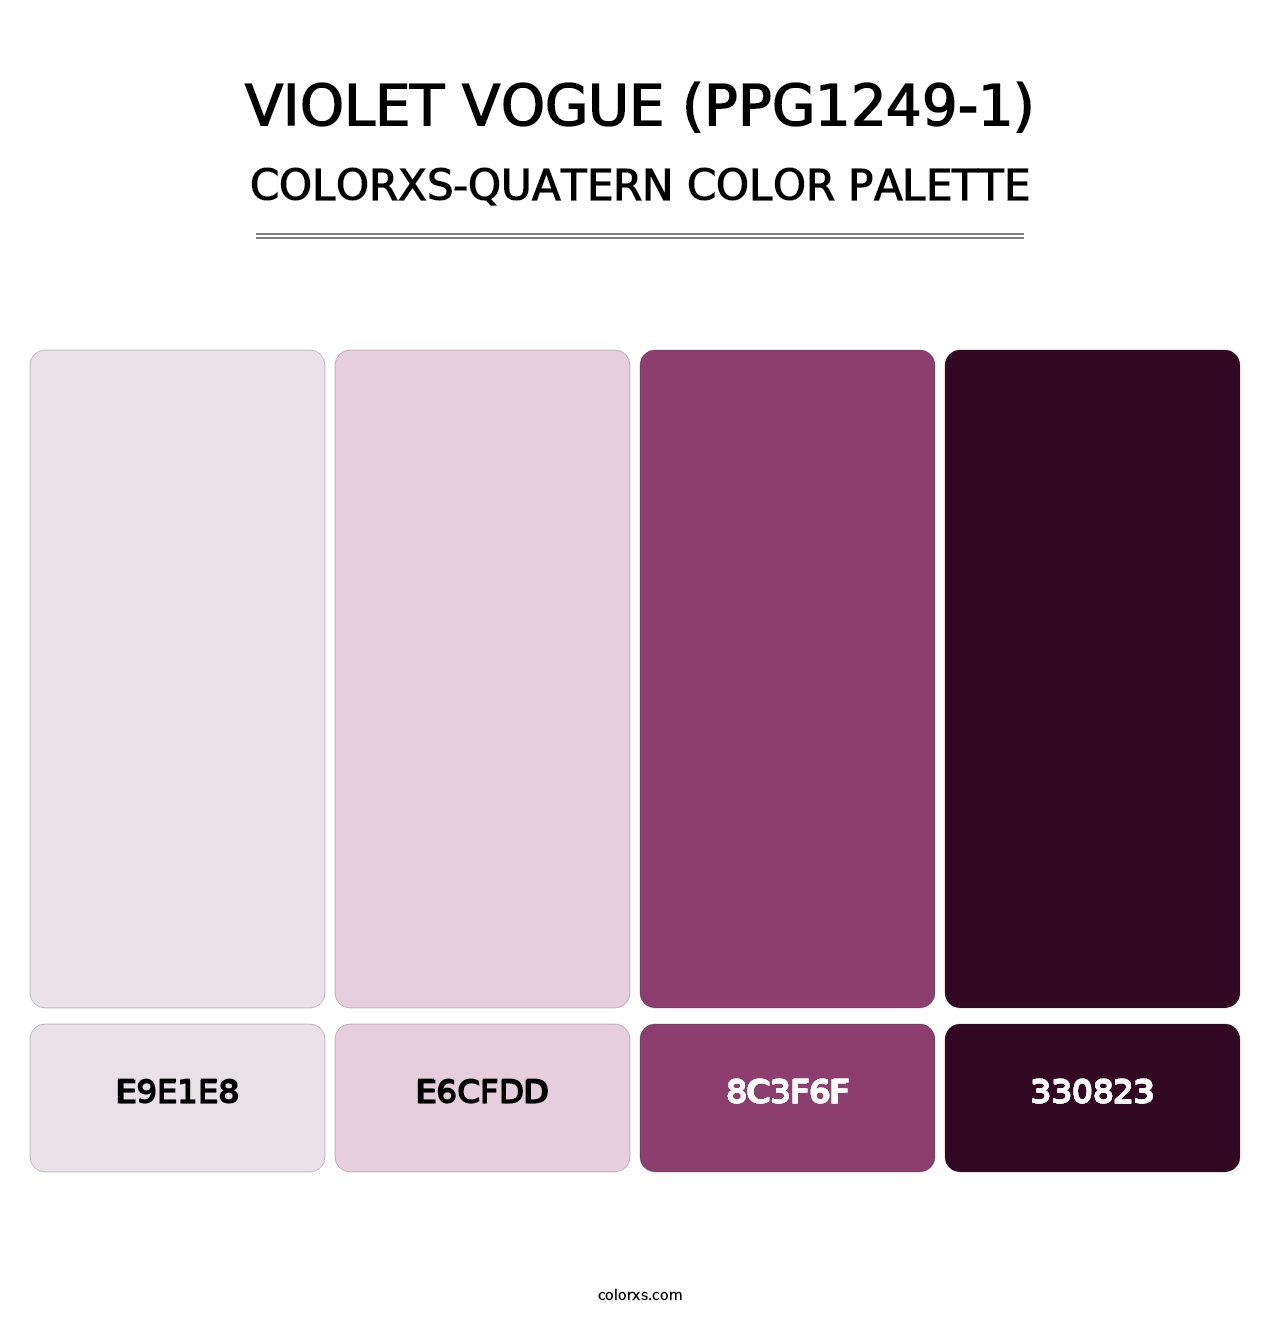 Violet Vogue (PPG1249-1) - Colorxs Quatern Palette